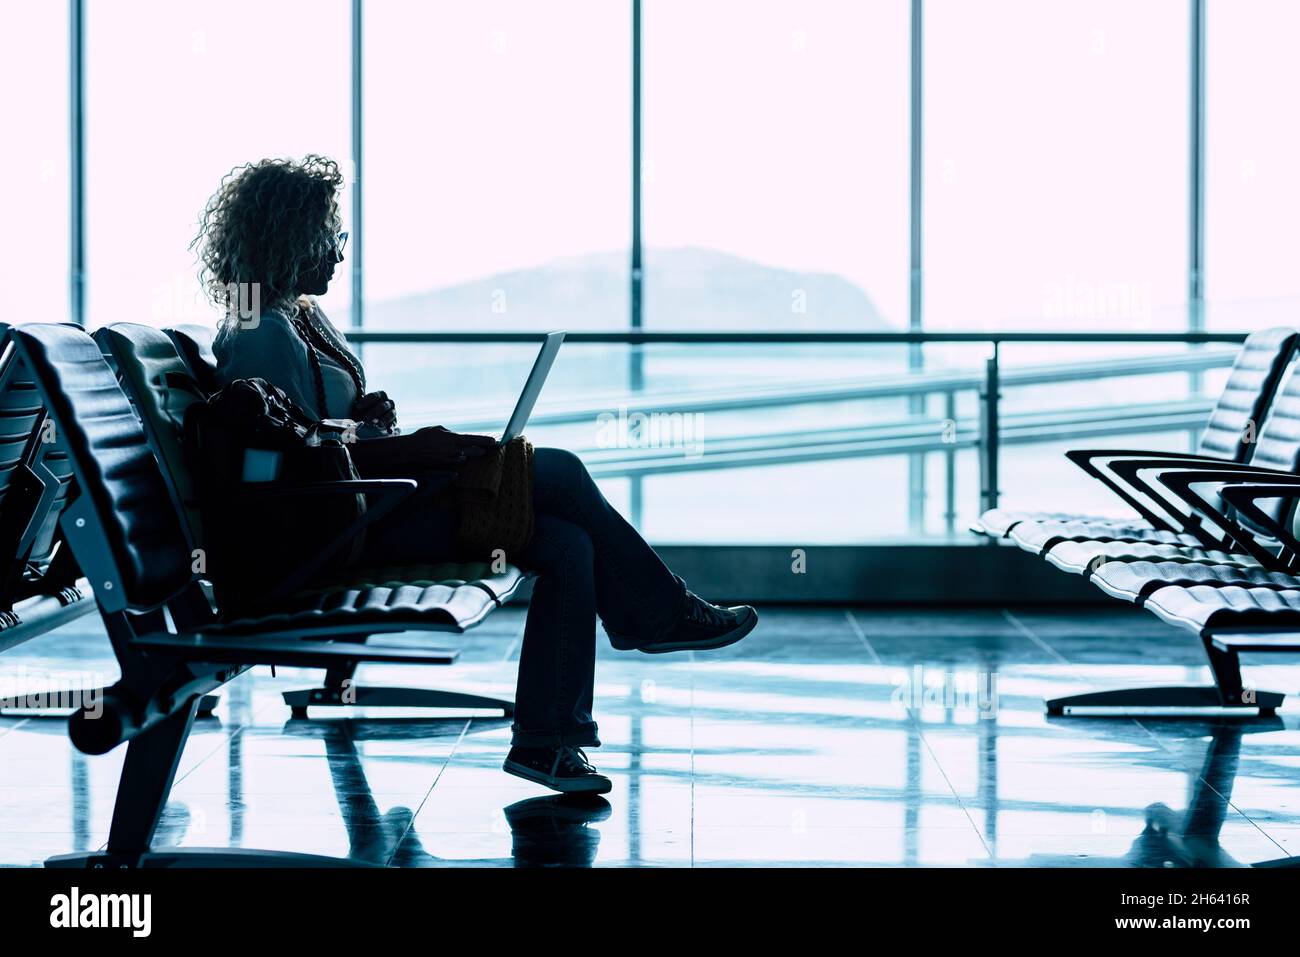 Eine Frau setzt sich allein am Flughafen-Gate nieder und wartet auf den Flug, um zu reisen - Geschäfts- oder Urlaubsreisende - Fenster mit heller Aussicht im Hintergrund - Dame, die sitzt und wartet, verzögern das Abflug-Flugzeug Stockfoto